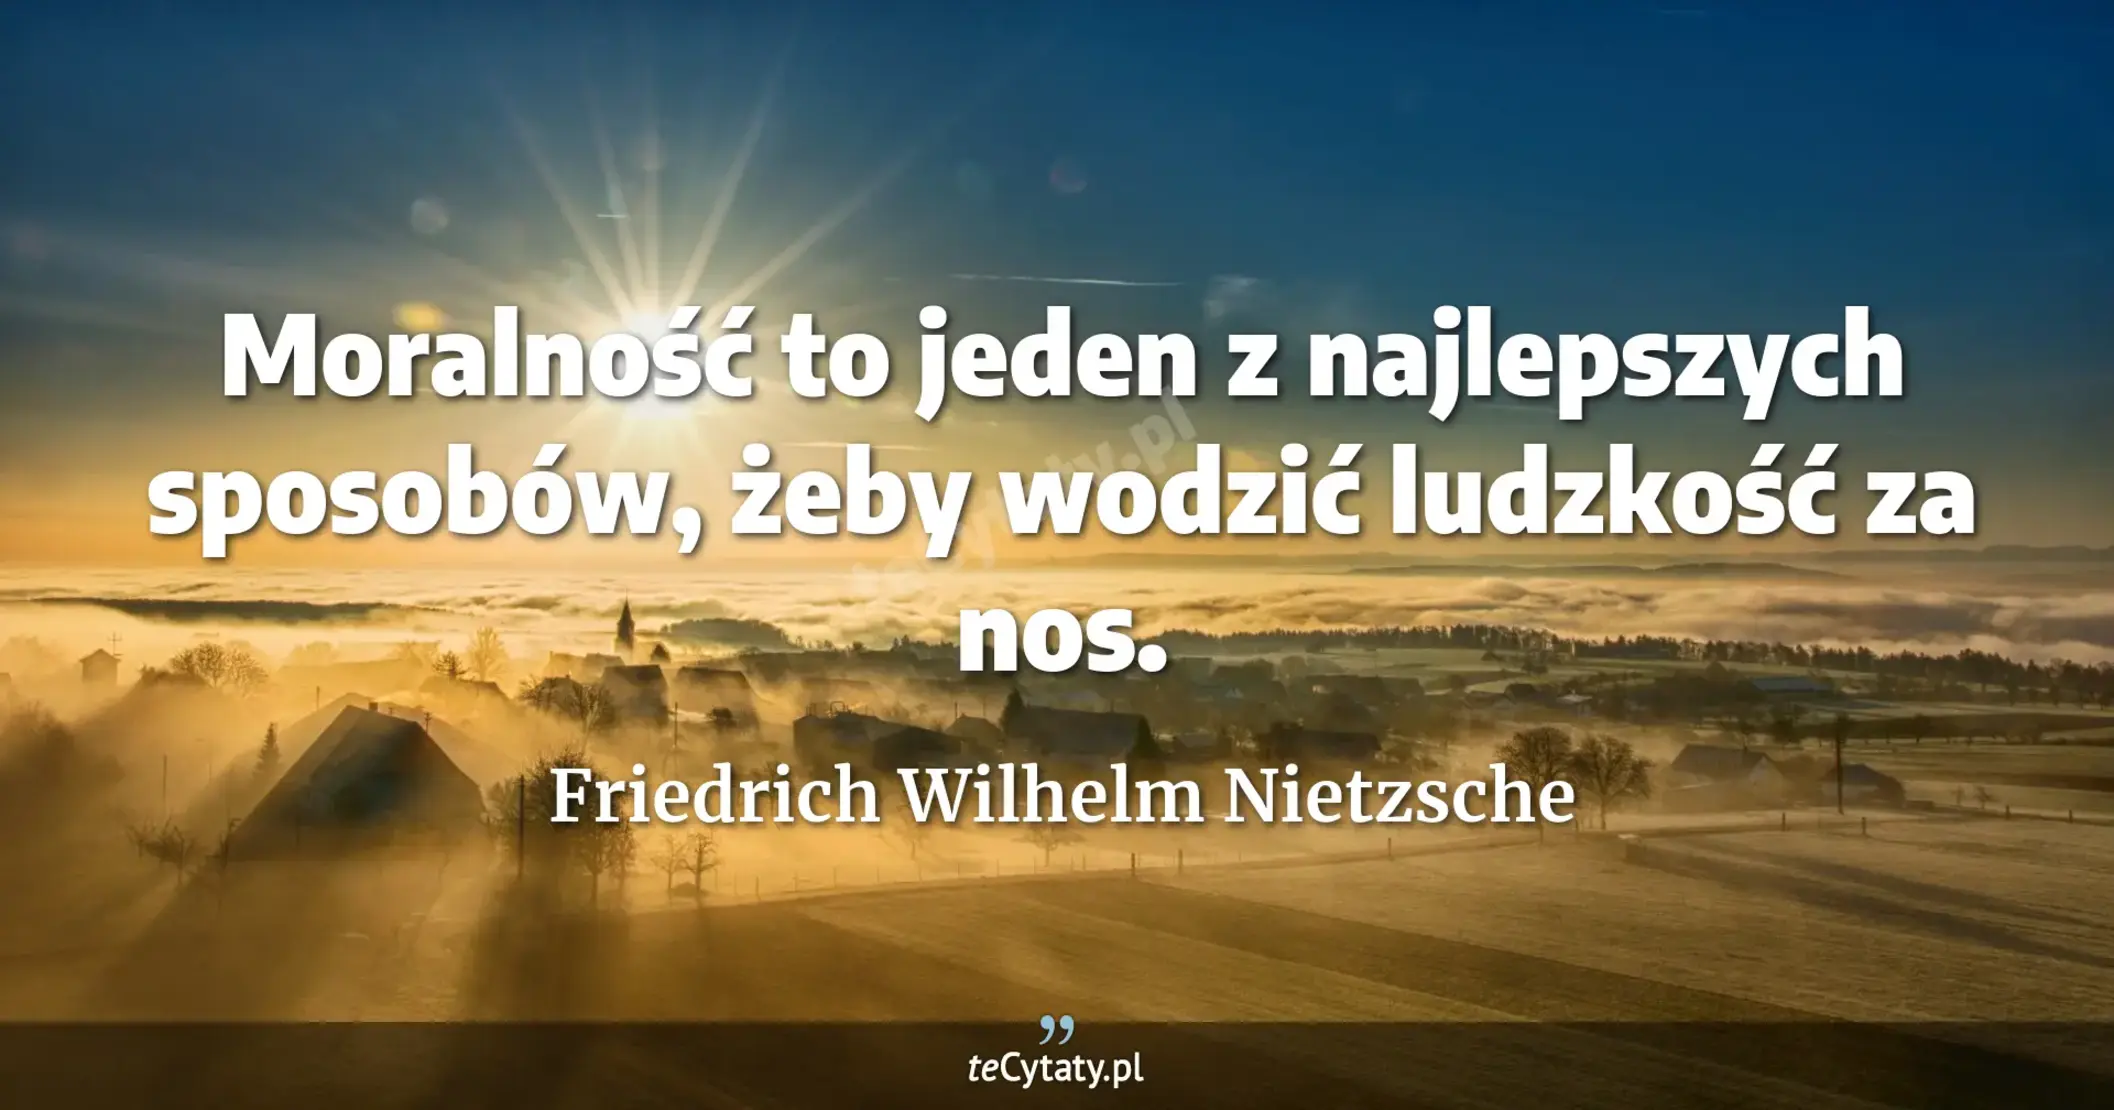 Moralność to jeden z najlepszych sposobów, żeby wodzić ludzkość za nos. - Friedrich Wilhelm Nietzsche